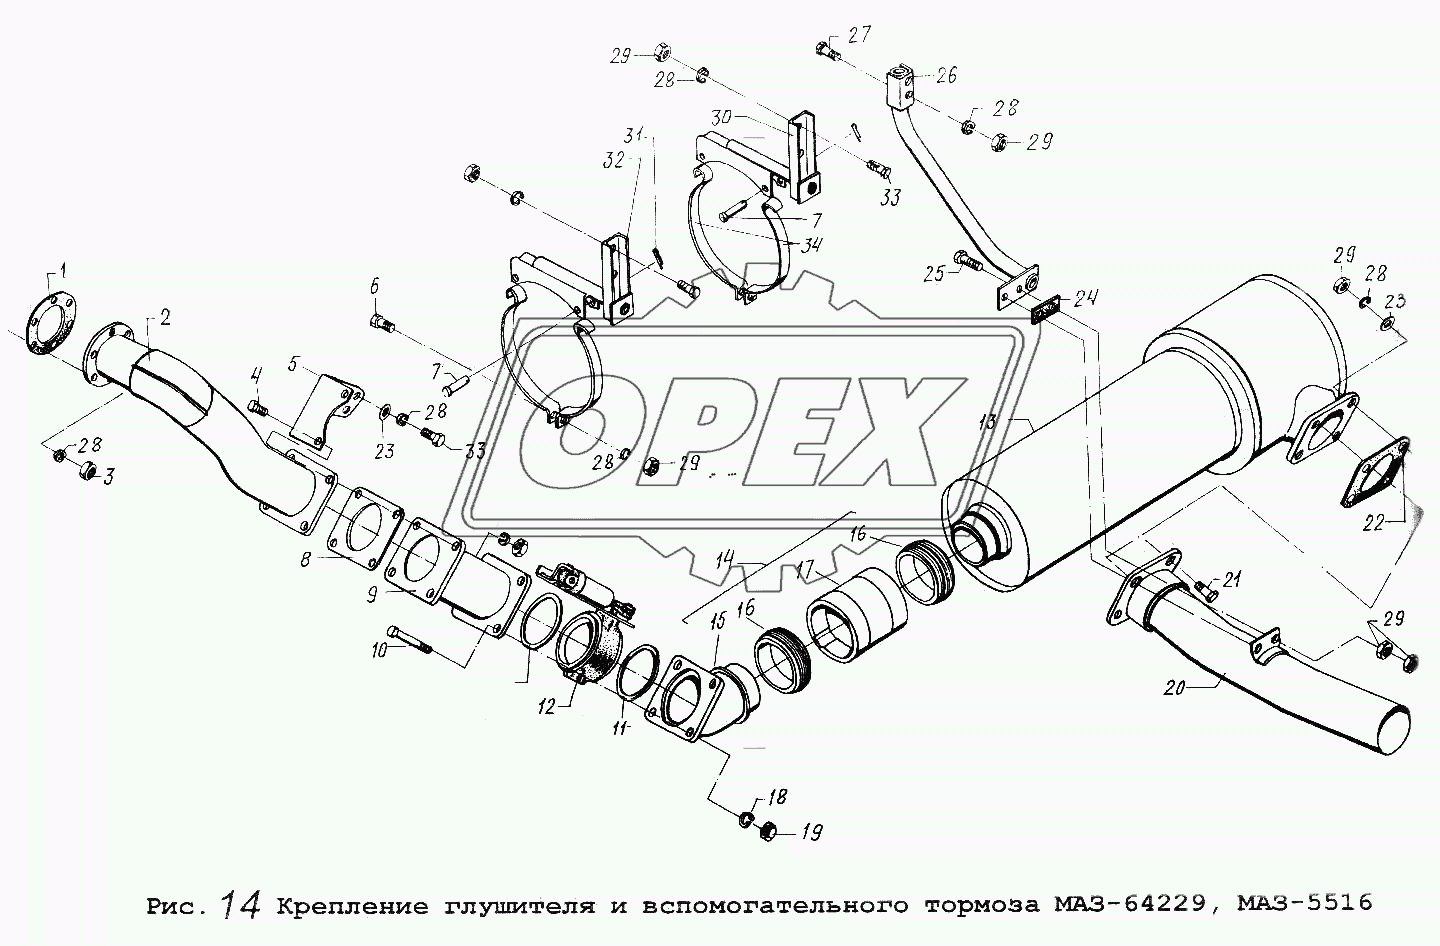 Крепление глушителя и вспомогательного тормоза МАЗ-64229, МАЗ-5516